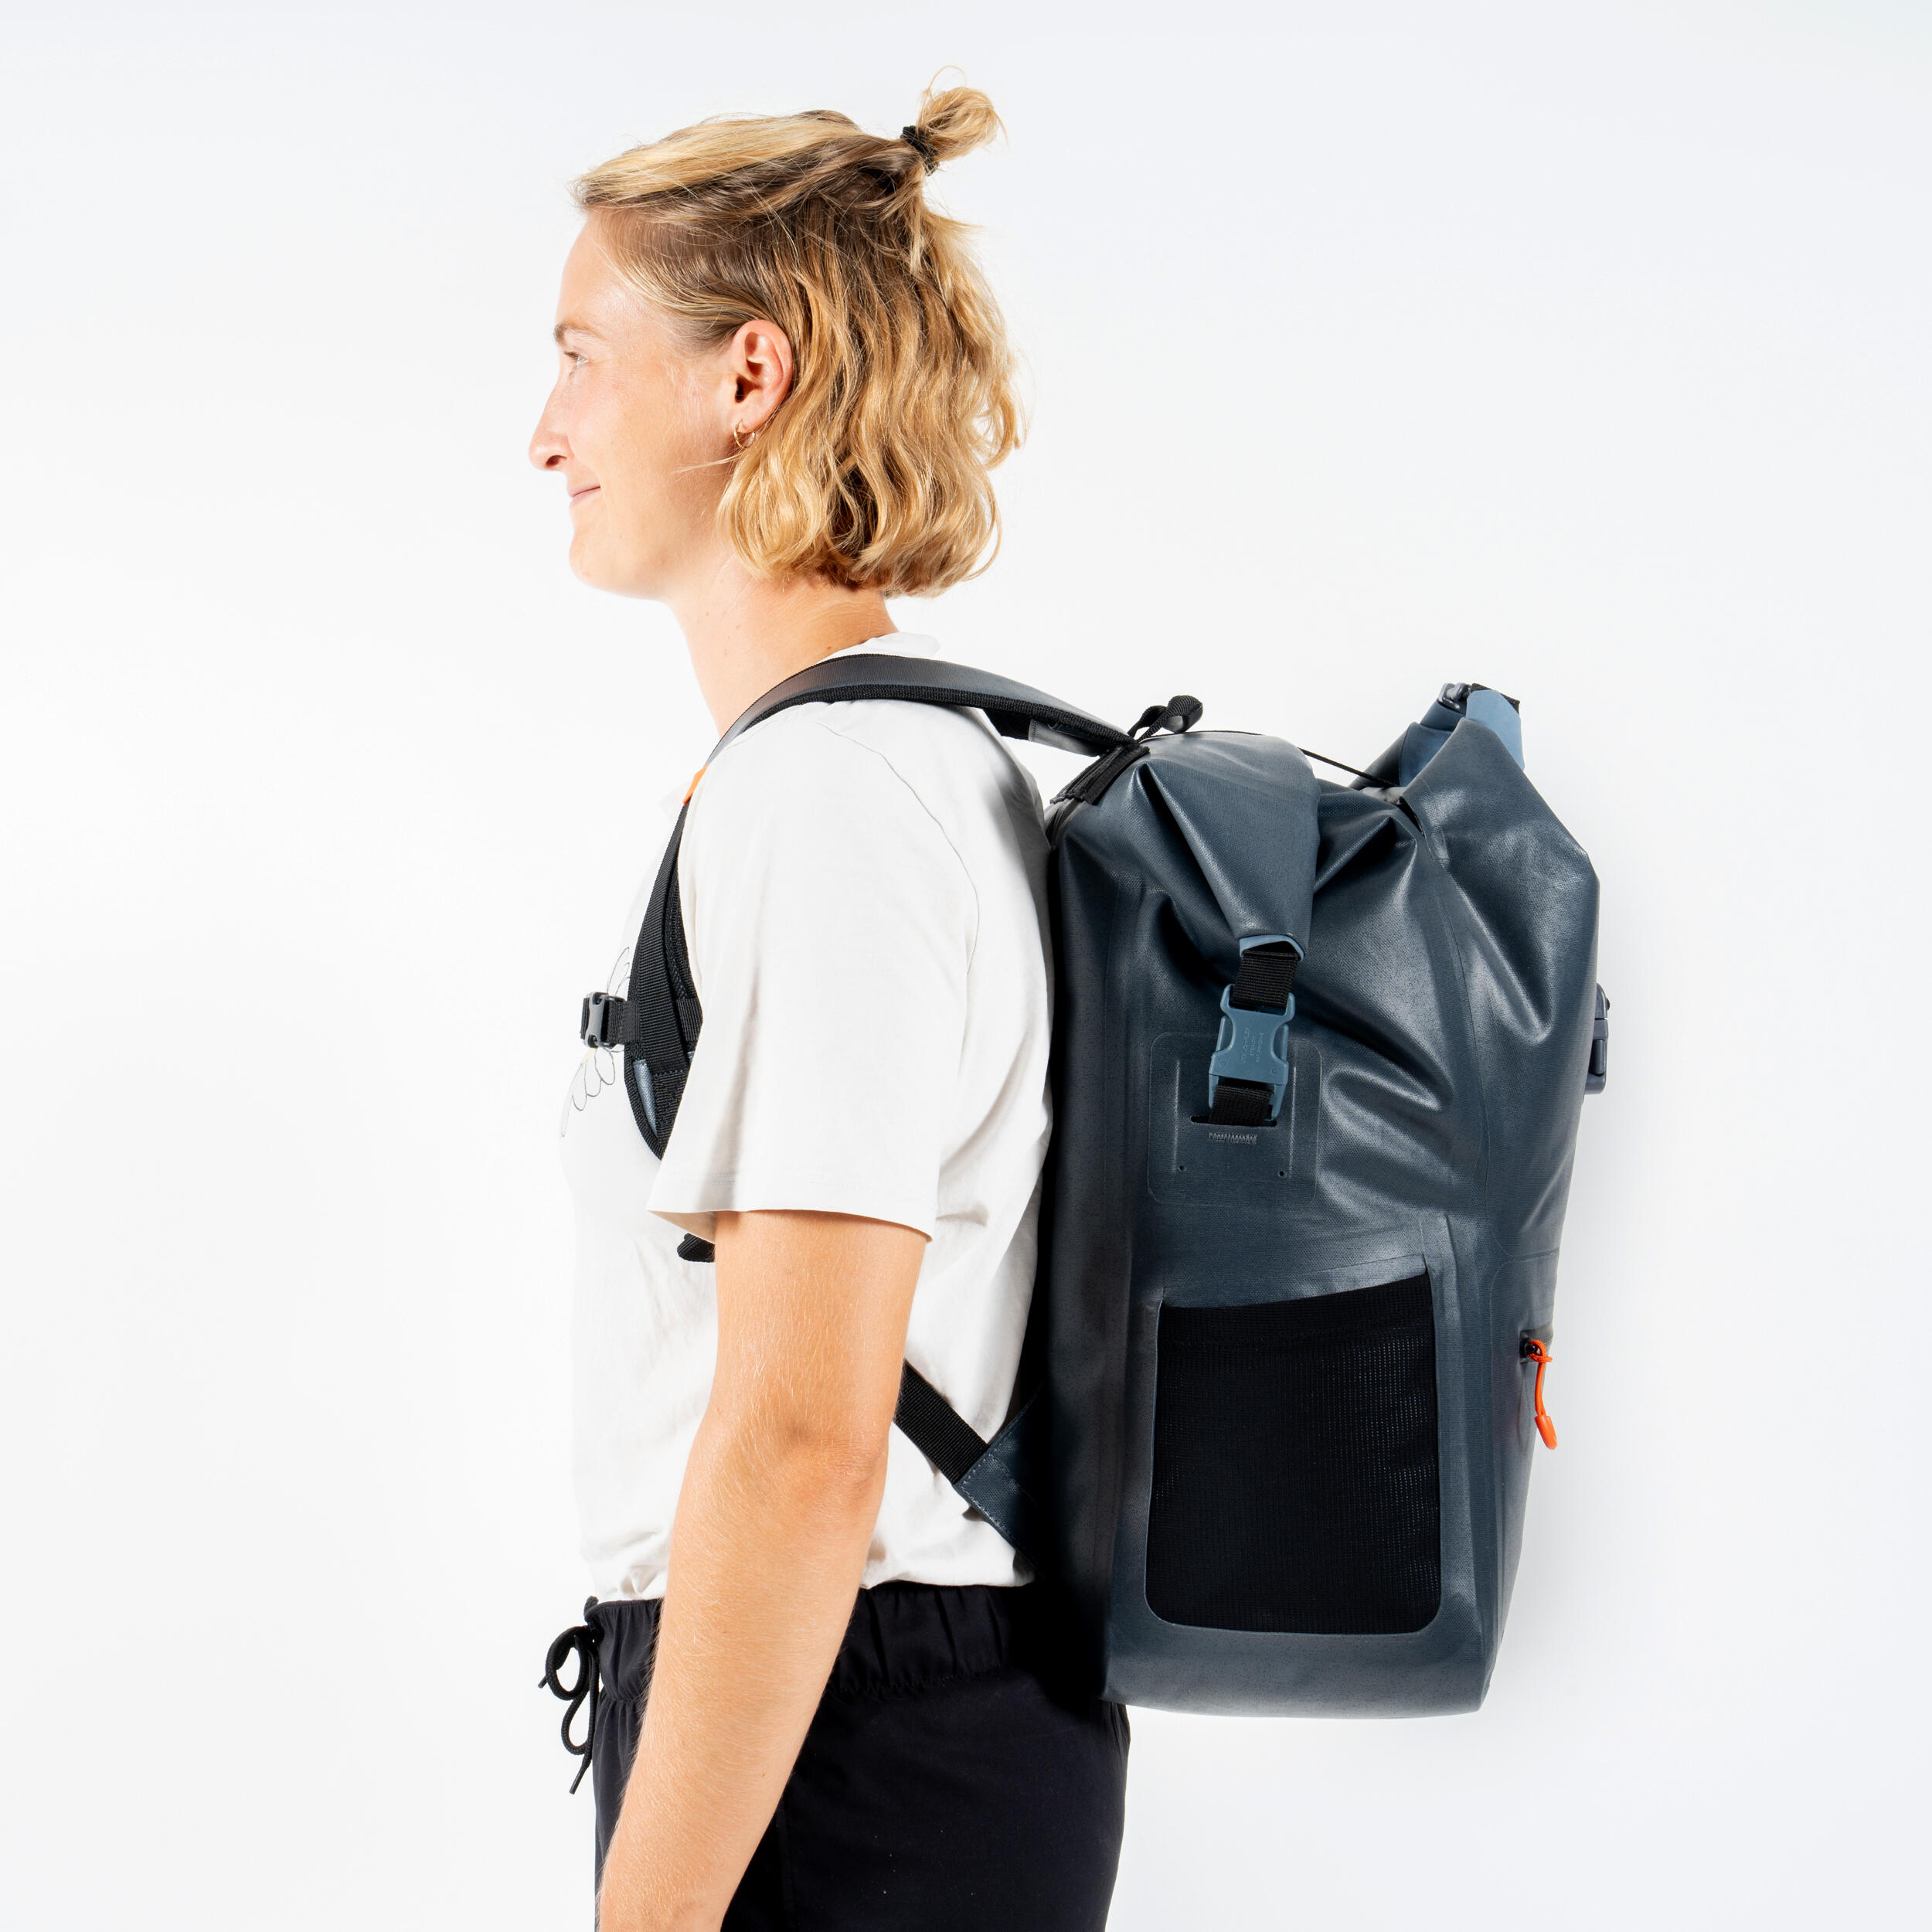 Waterproof backpacks, 2 sections (dry belongings, wet belongings) 35 L. 12/17